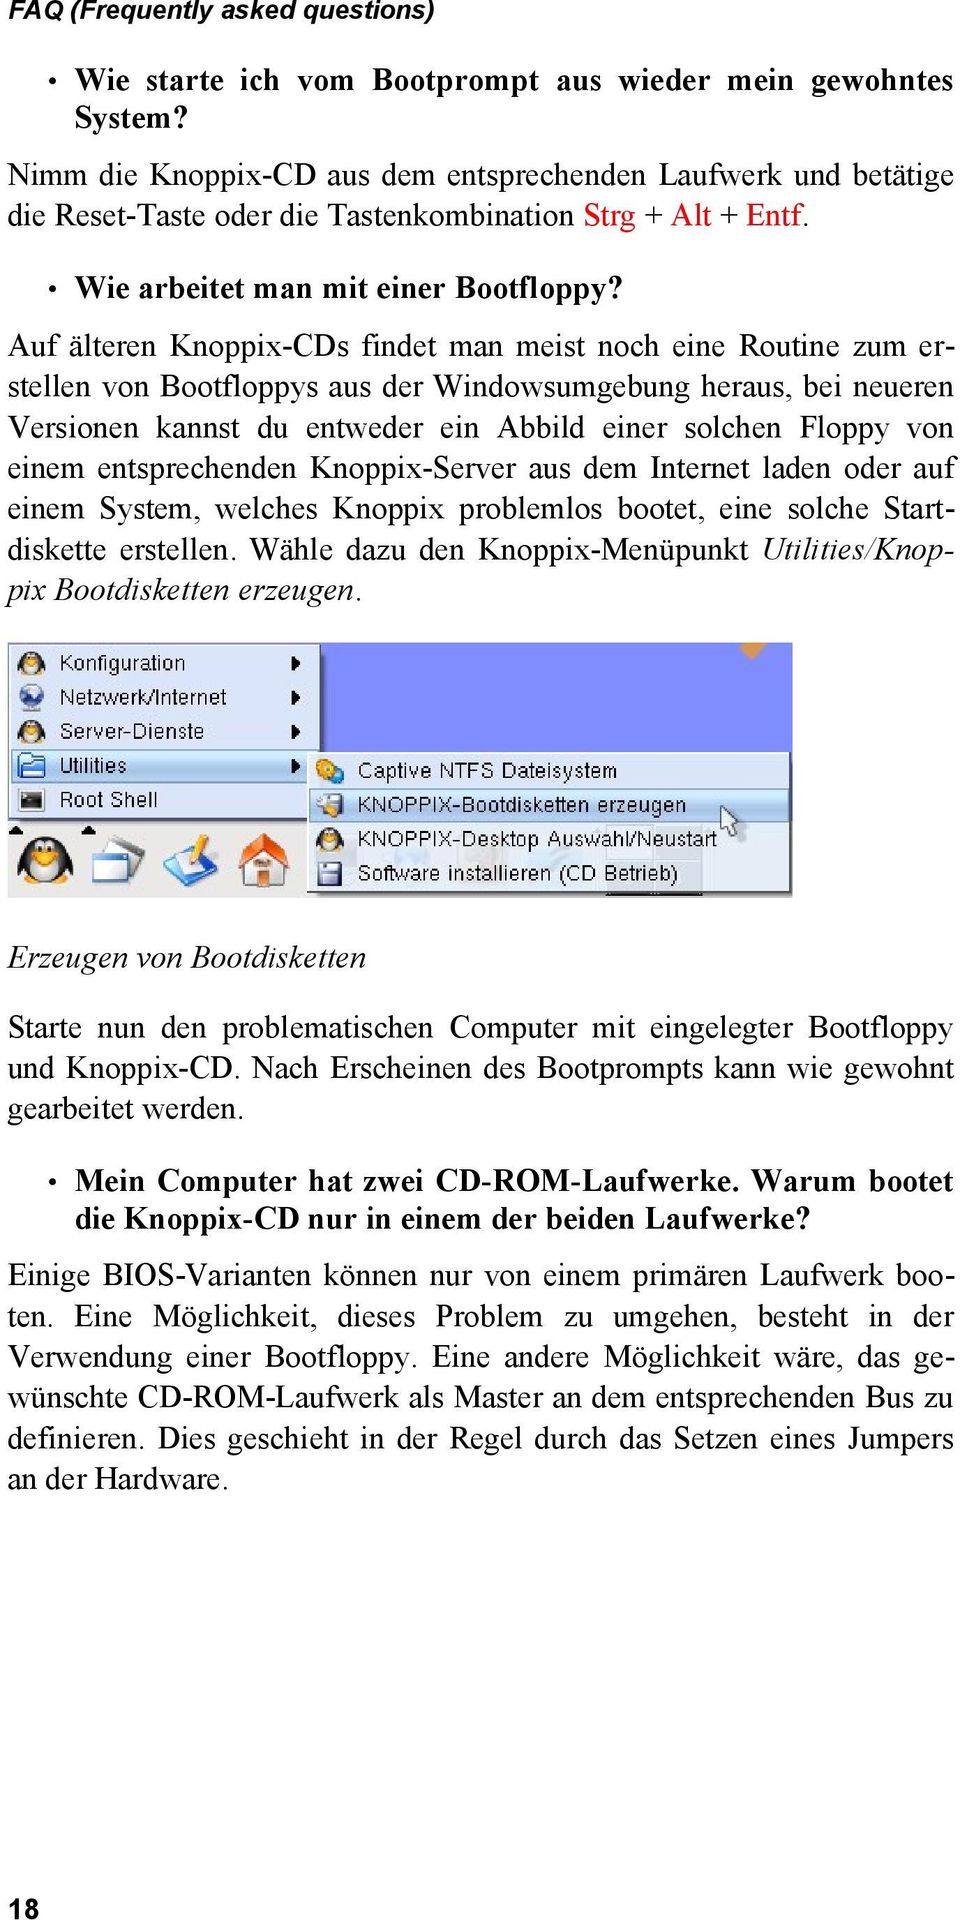 Auf älteren Knoppix-CDs findet man meist noch eine Routine zum er stellen von Bootfloppys aus der Windowsumgebung heraus, bei neueren Versionen kannst du entweder ein Abbild einer solchen Floppy von